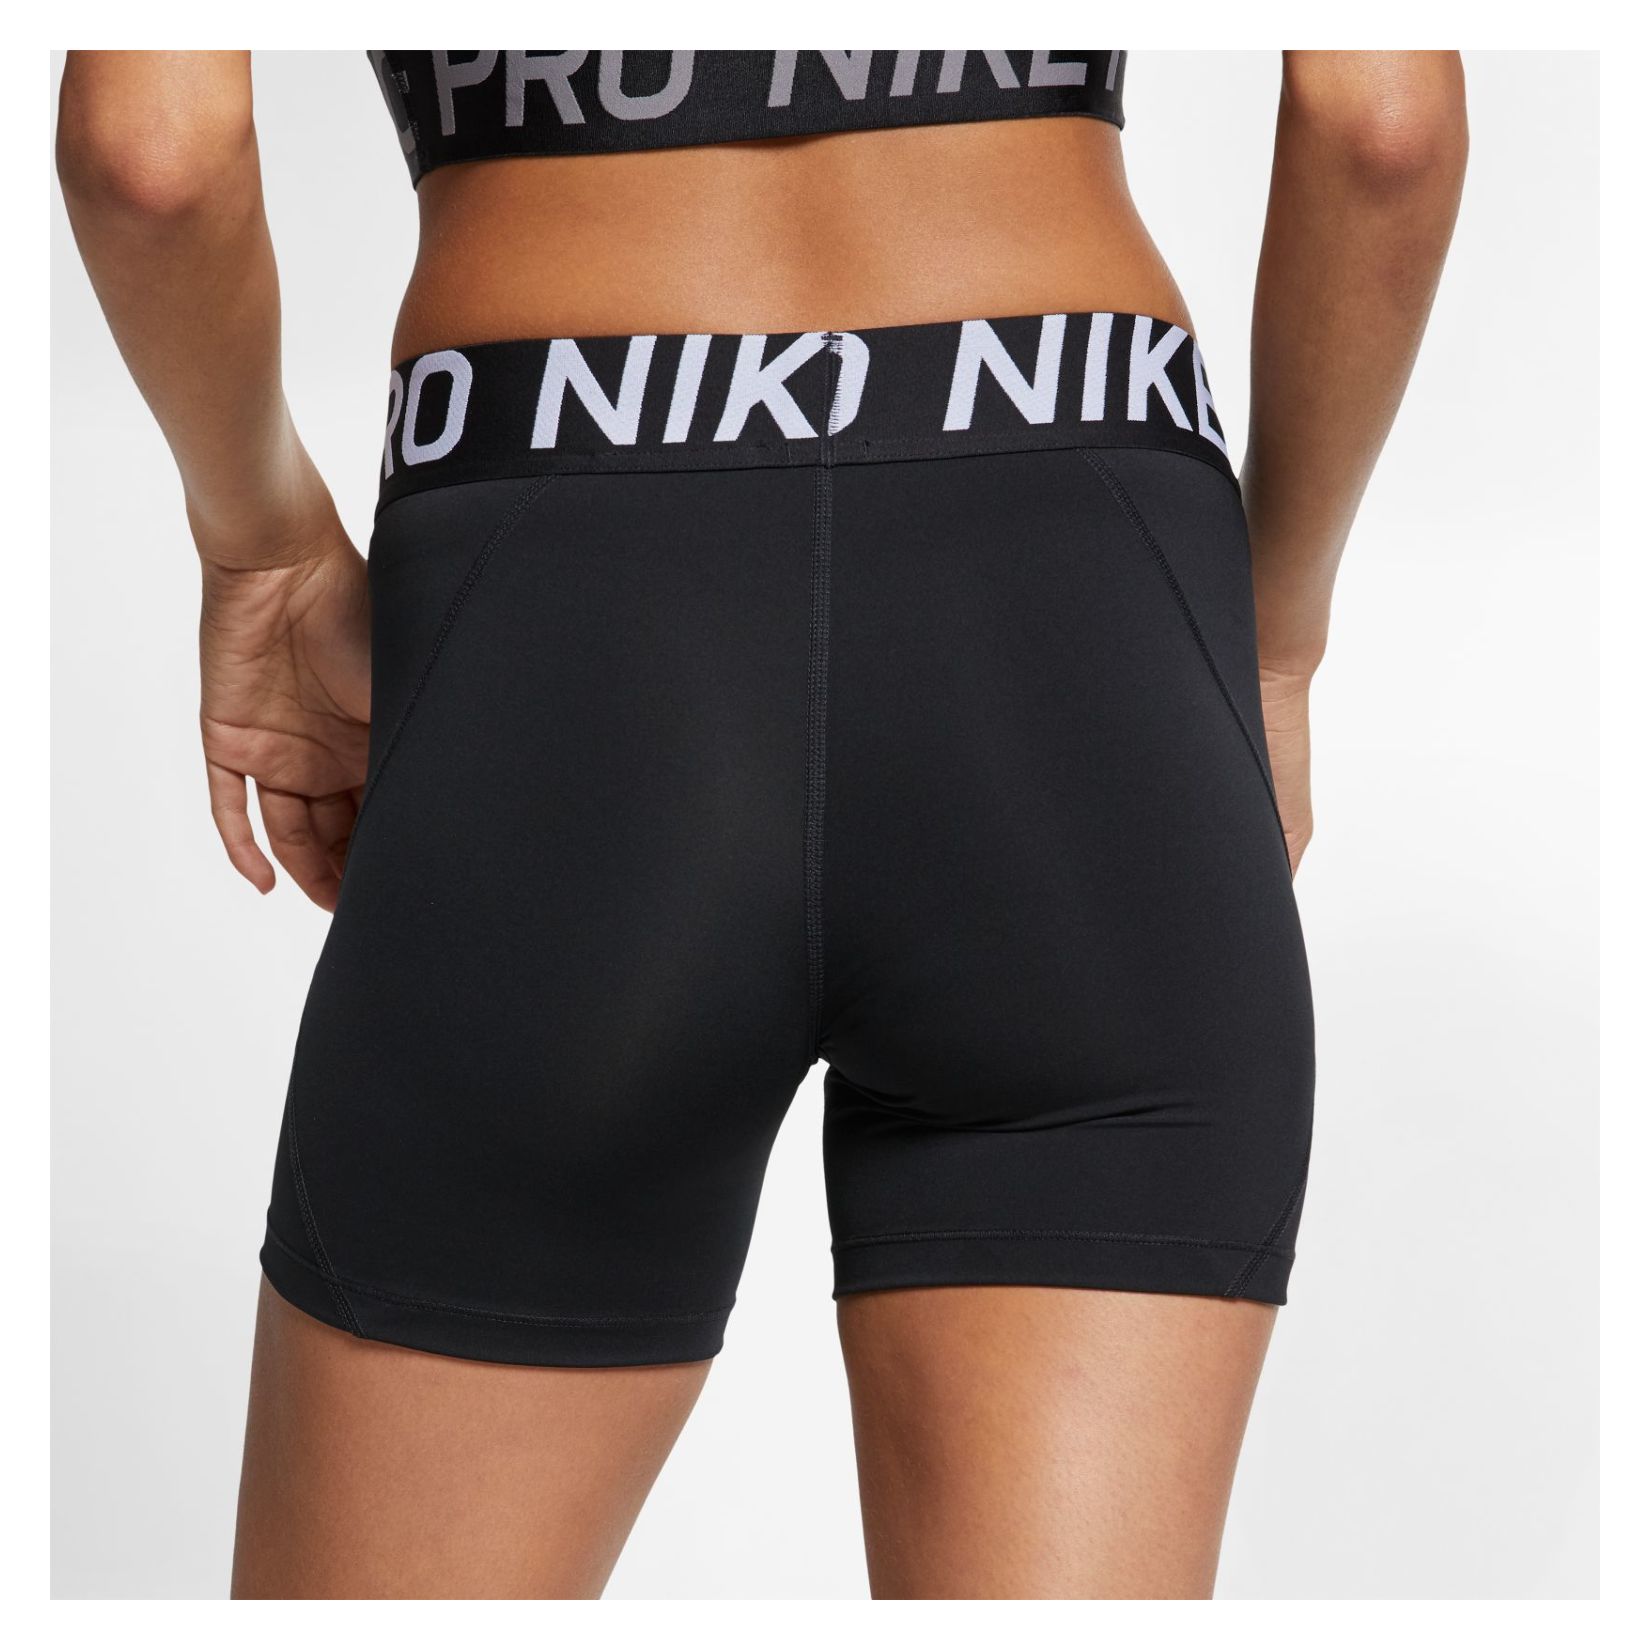 nike pro shorts 5 inch black